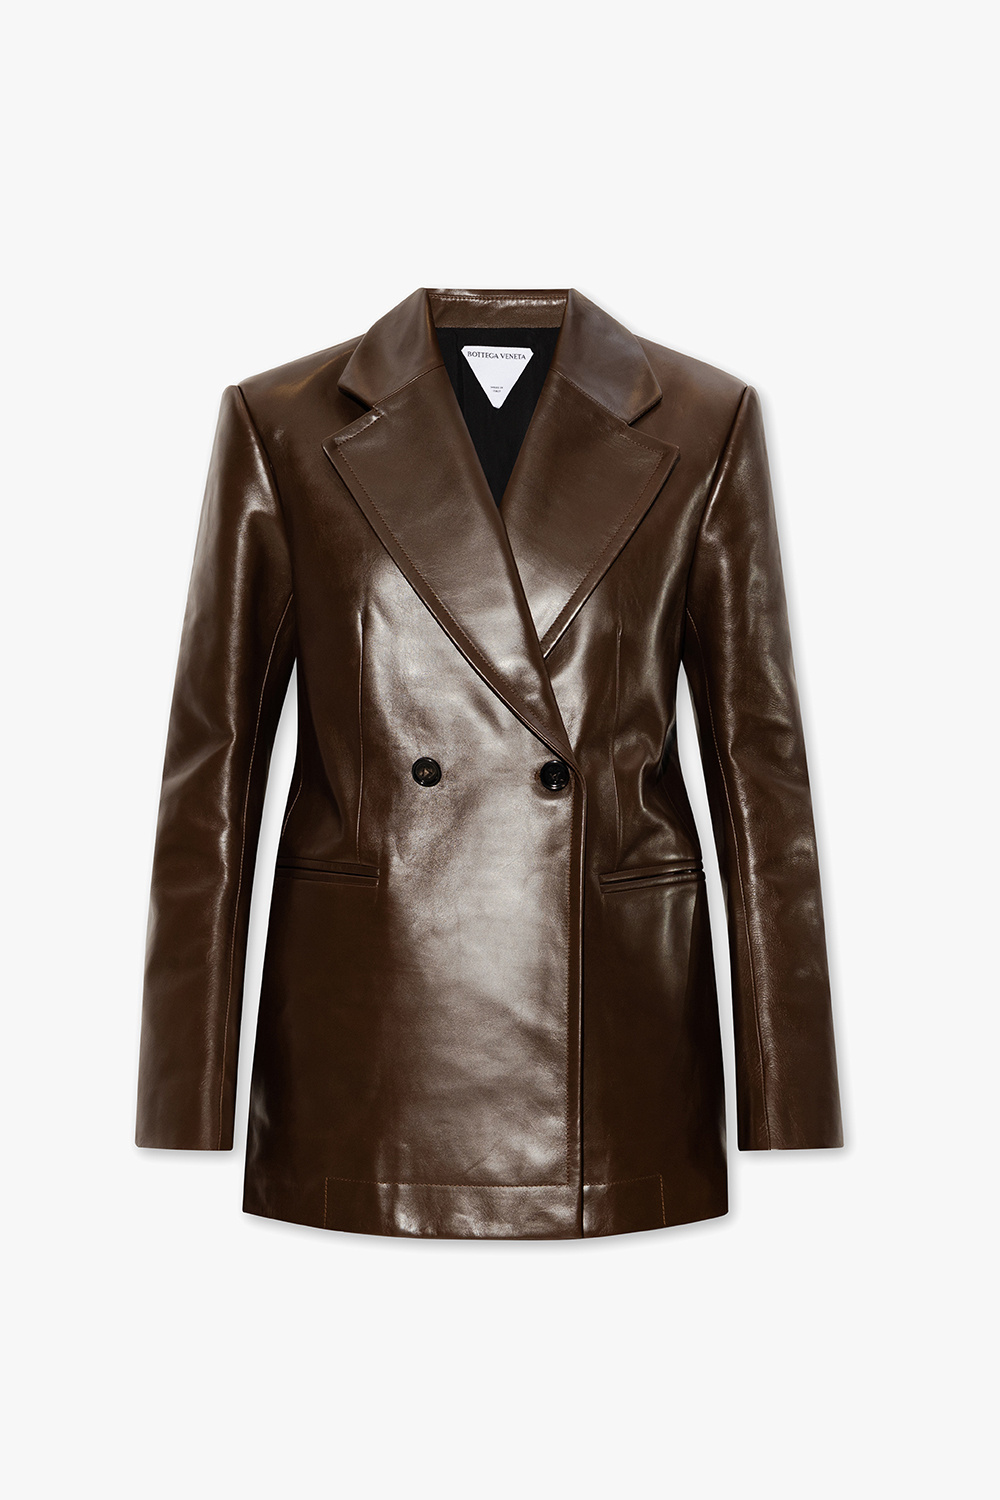 Bottega Veneta Women's Double-Breasted Leather Coat